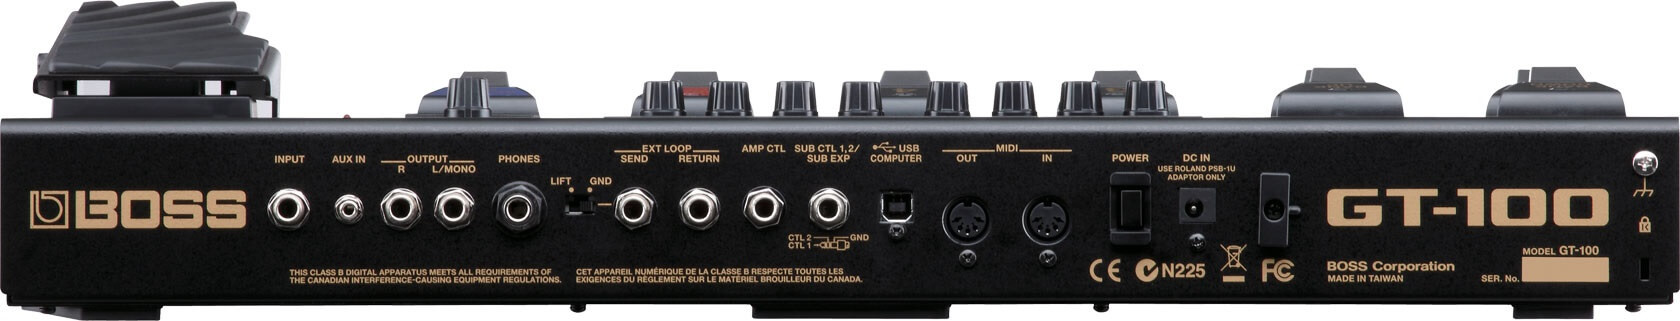 BOSS GT-100 Guitar Multi-Effects Processor Diamu